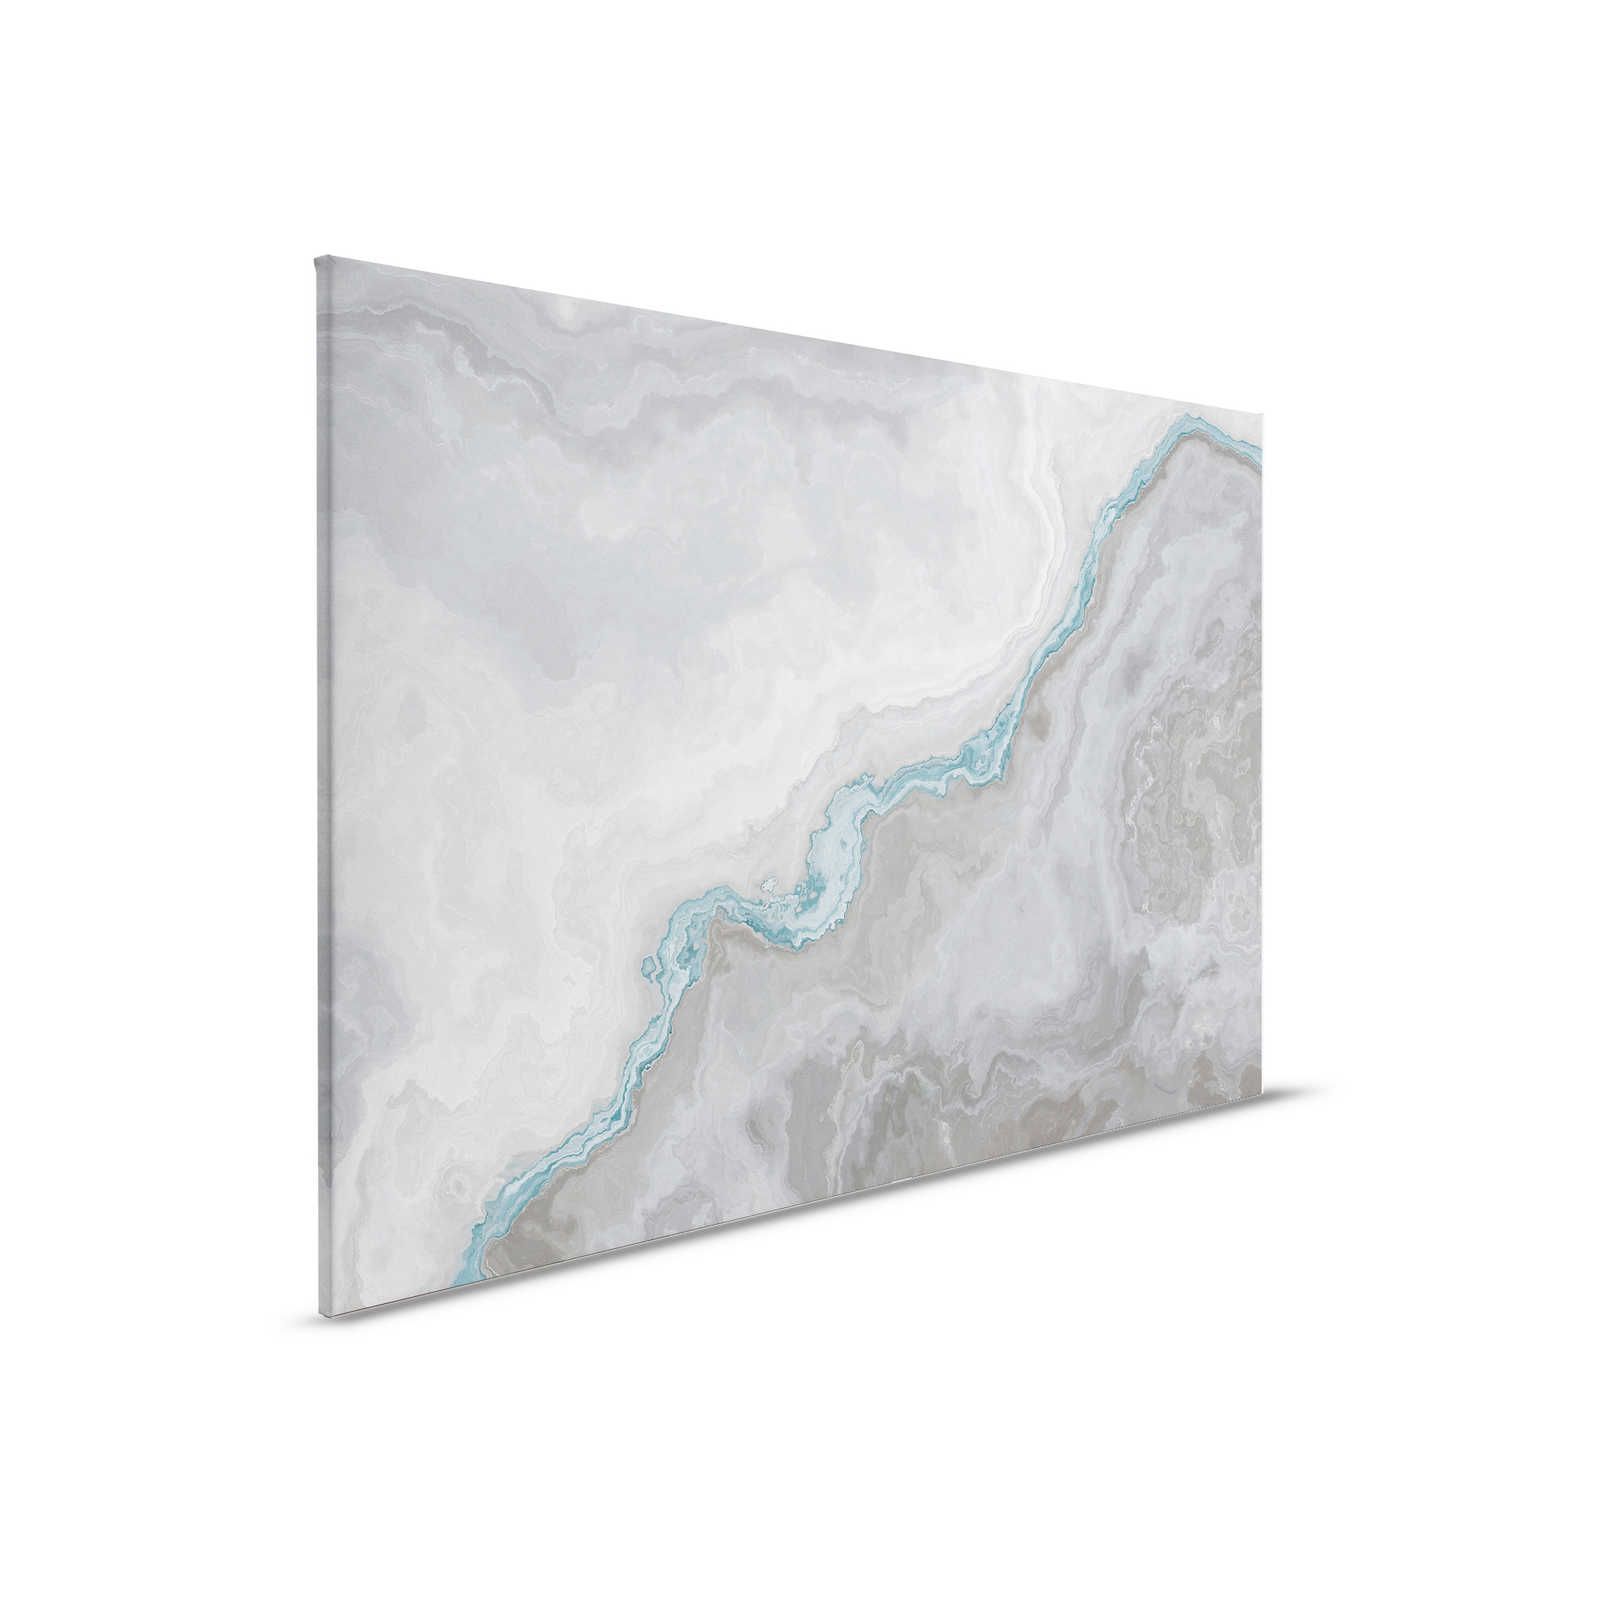         Canvas painting marbled with quartz optics - 0.90 m x 0.60 m
    